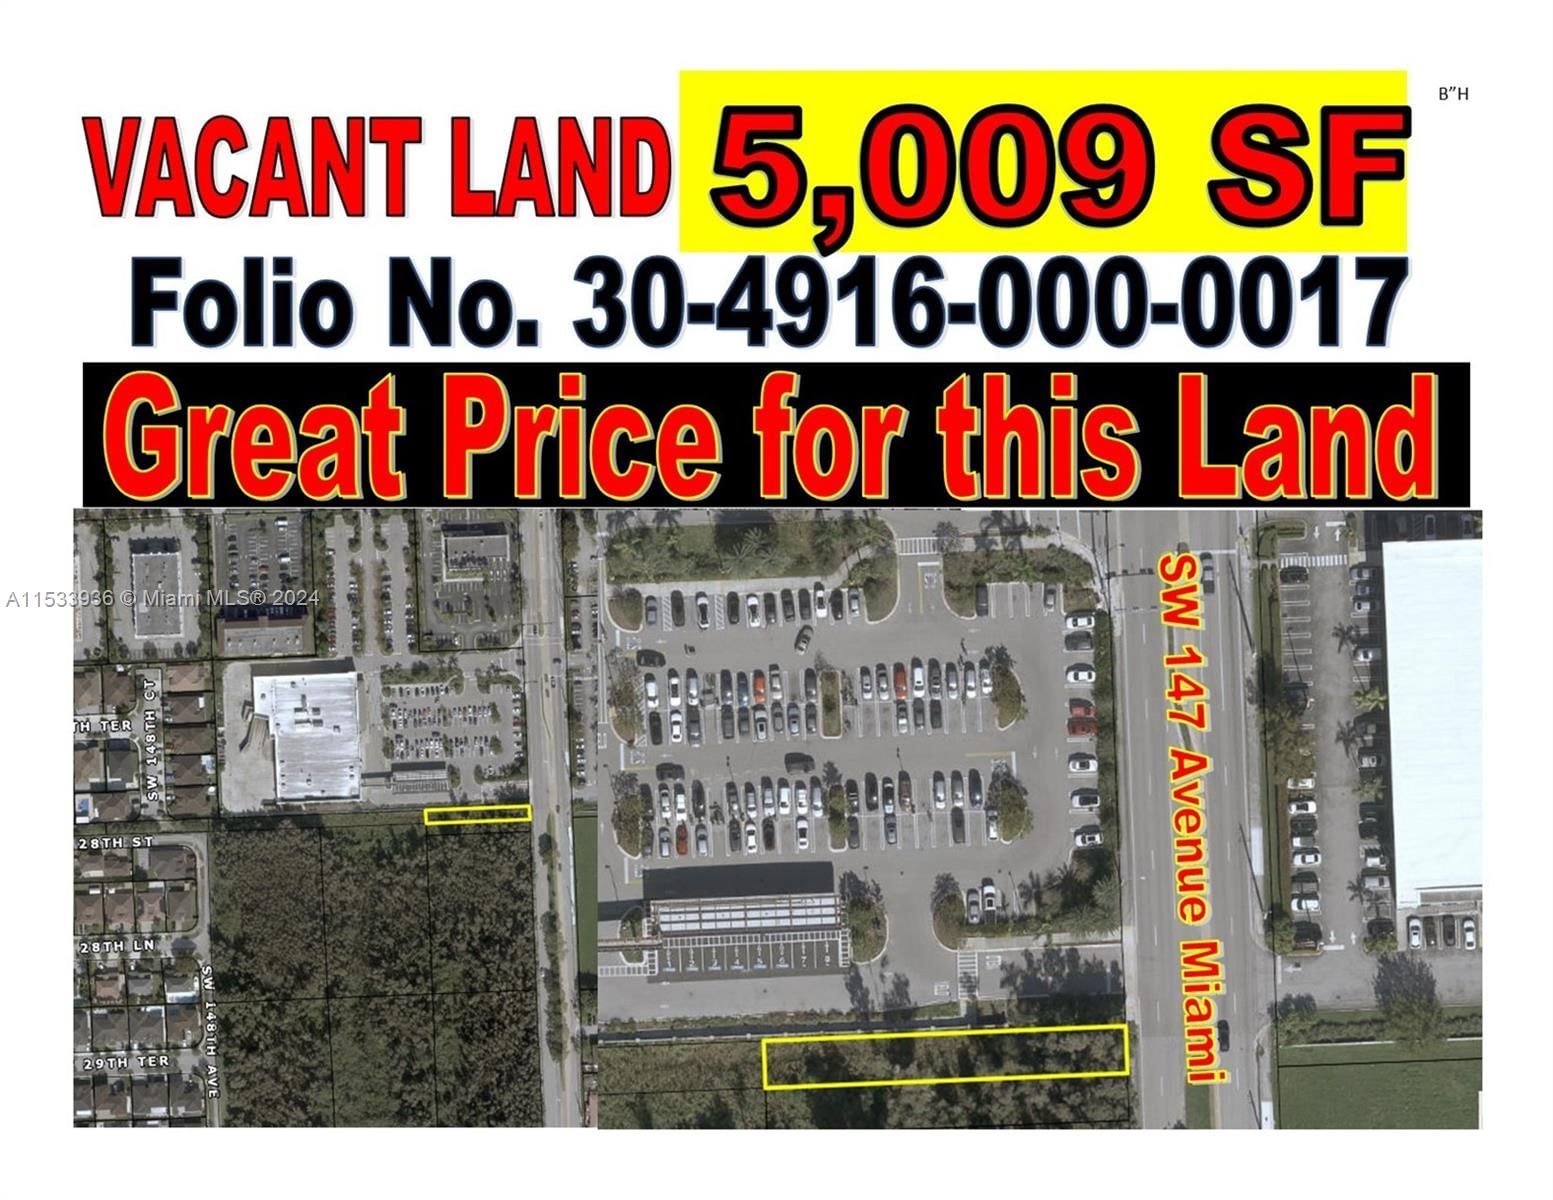 Real estate property located at SW 147 AVENUE, Miami-Dade County, Miami, FL